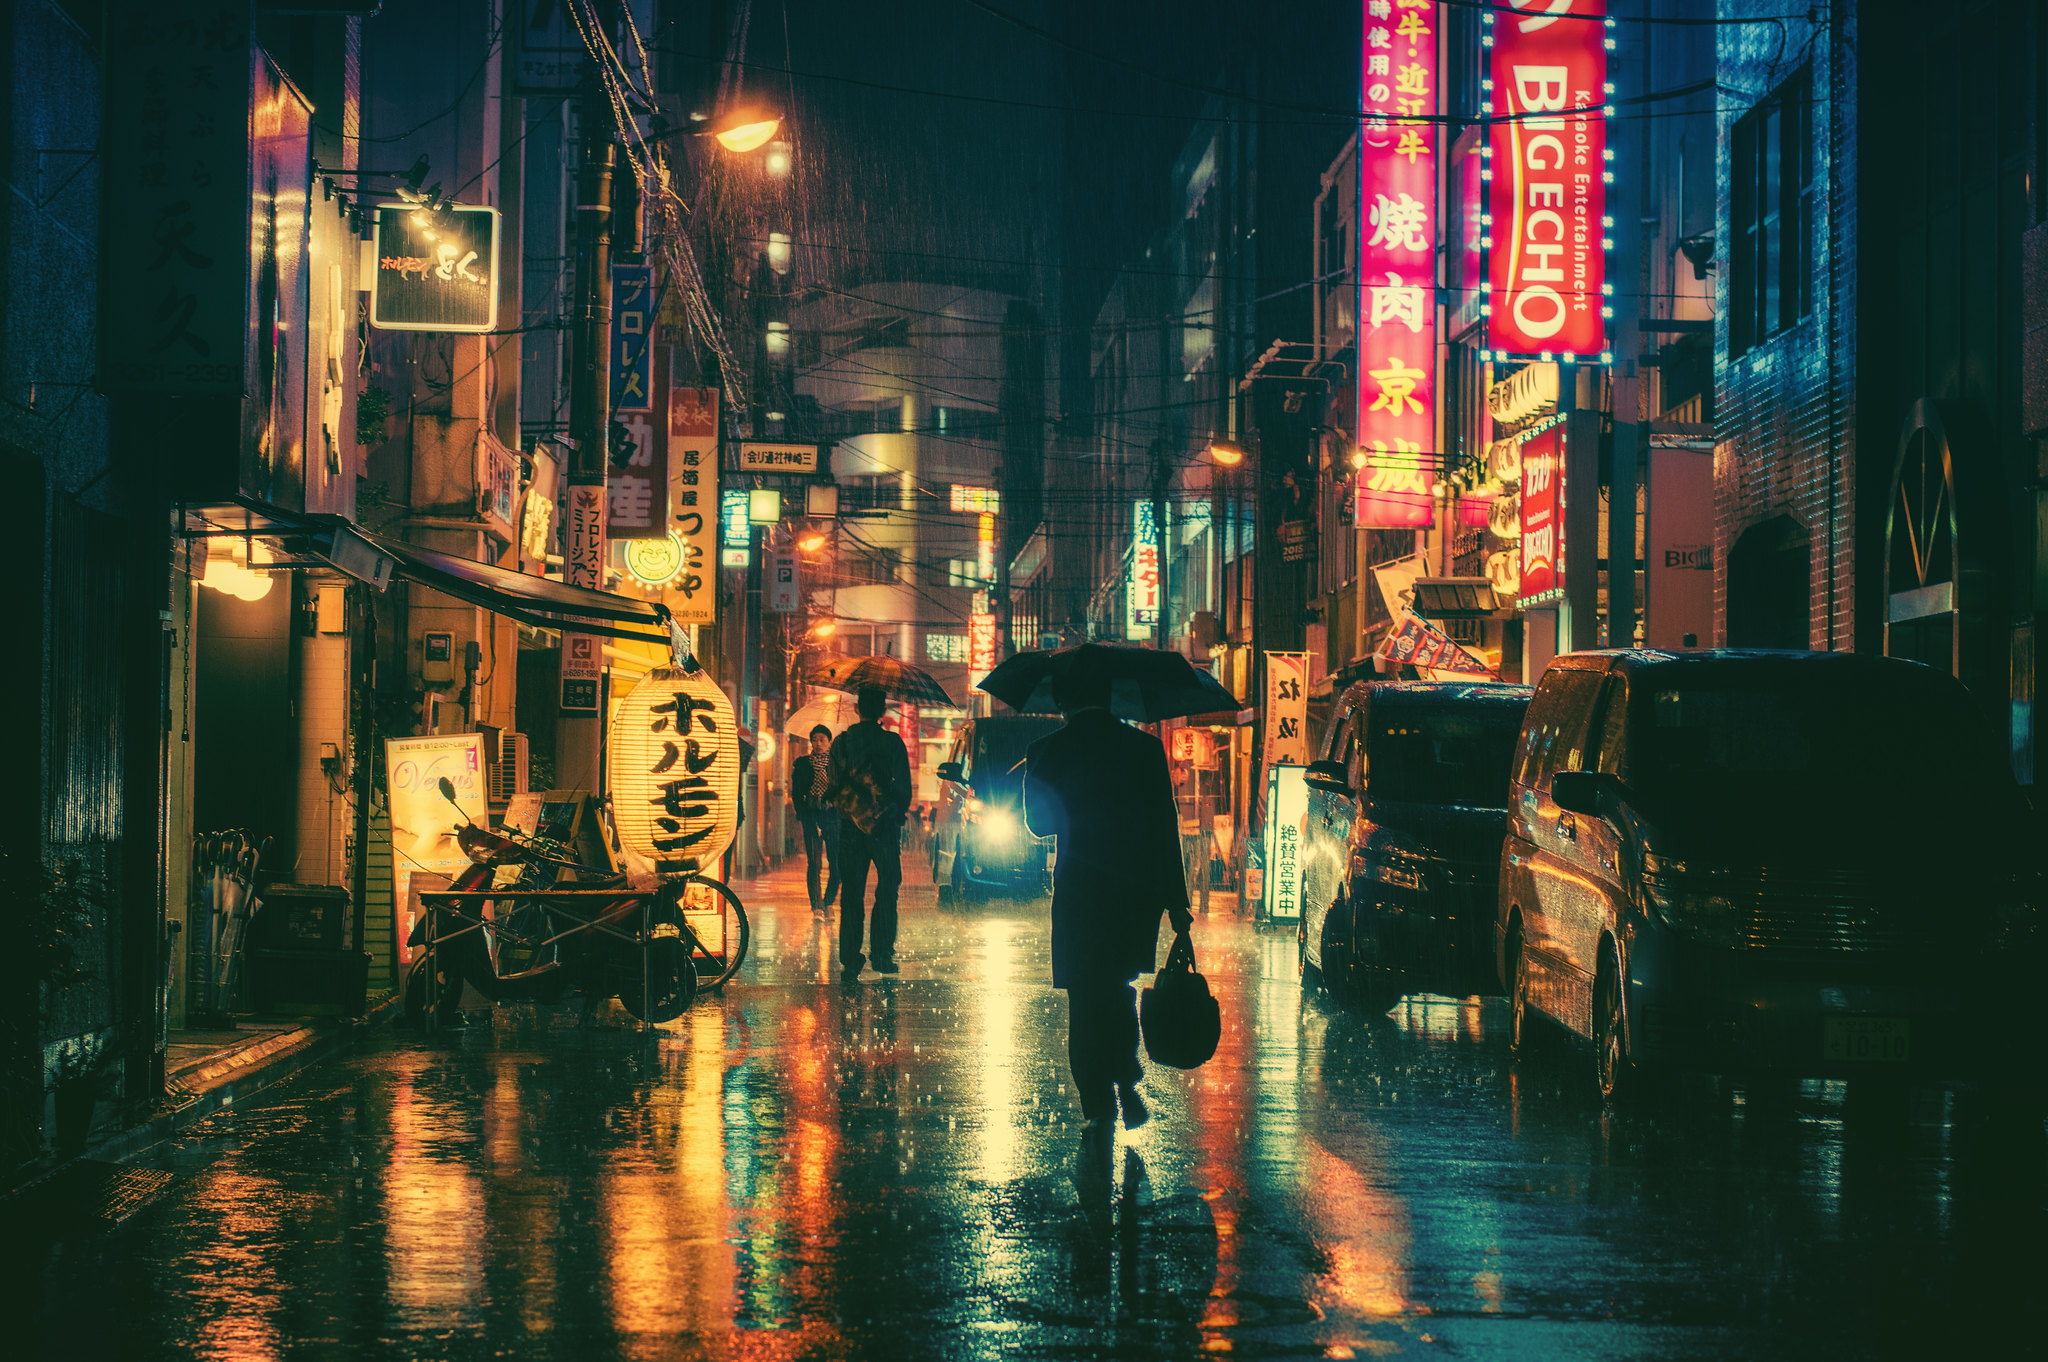 Rainy Night in Tokyo by Masashi Wakui